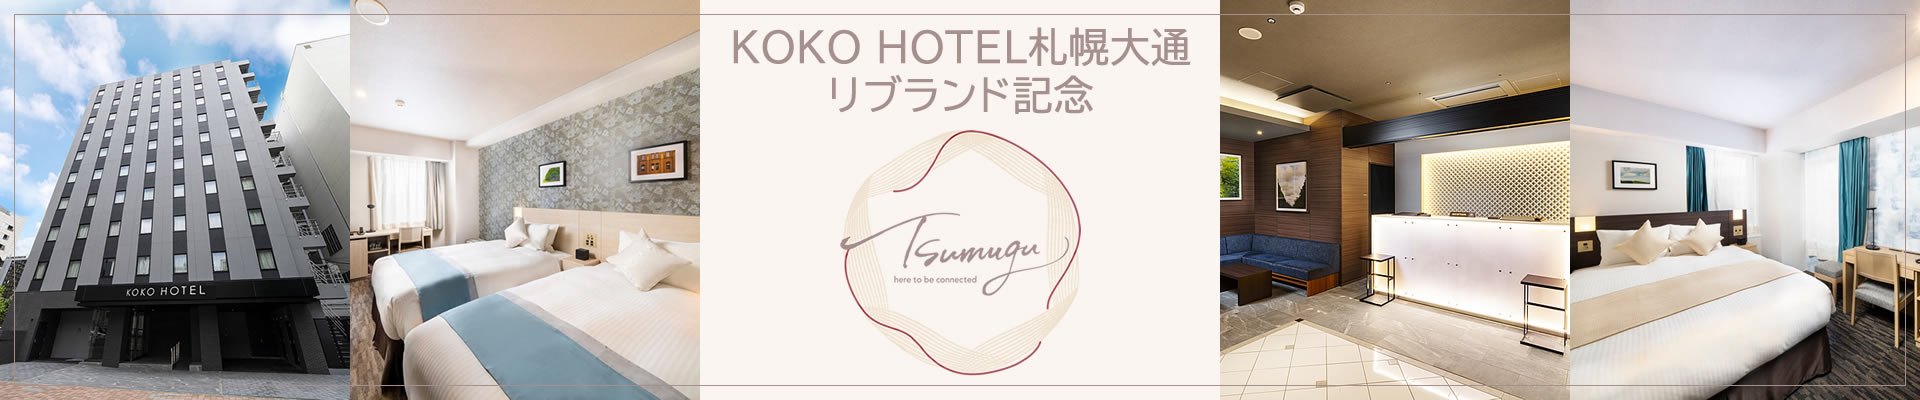 KOKO HOTEL 札幌大通 リブランド記念プラン